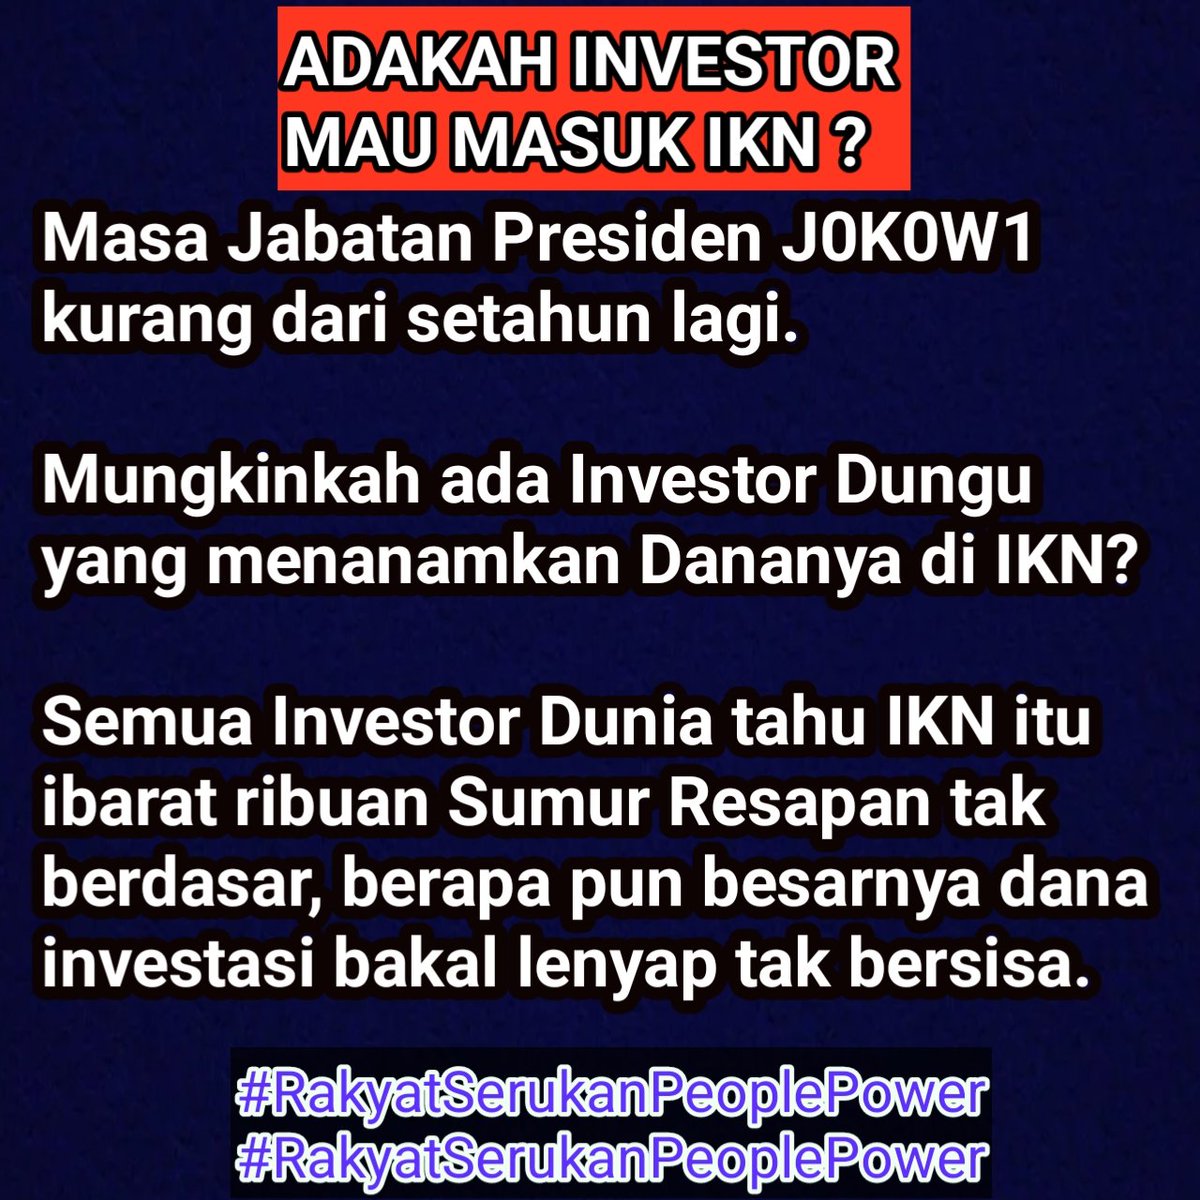 China biadab tidak pantas ikut campur negara lain !!!
#JokowiGarongDemokrasi 
#JokowiGarongDemokrasi
Hanya orang berotax dungu dan tolol berharap ada investor masuk ke IKN.